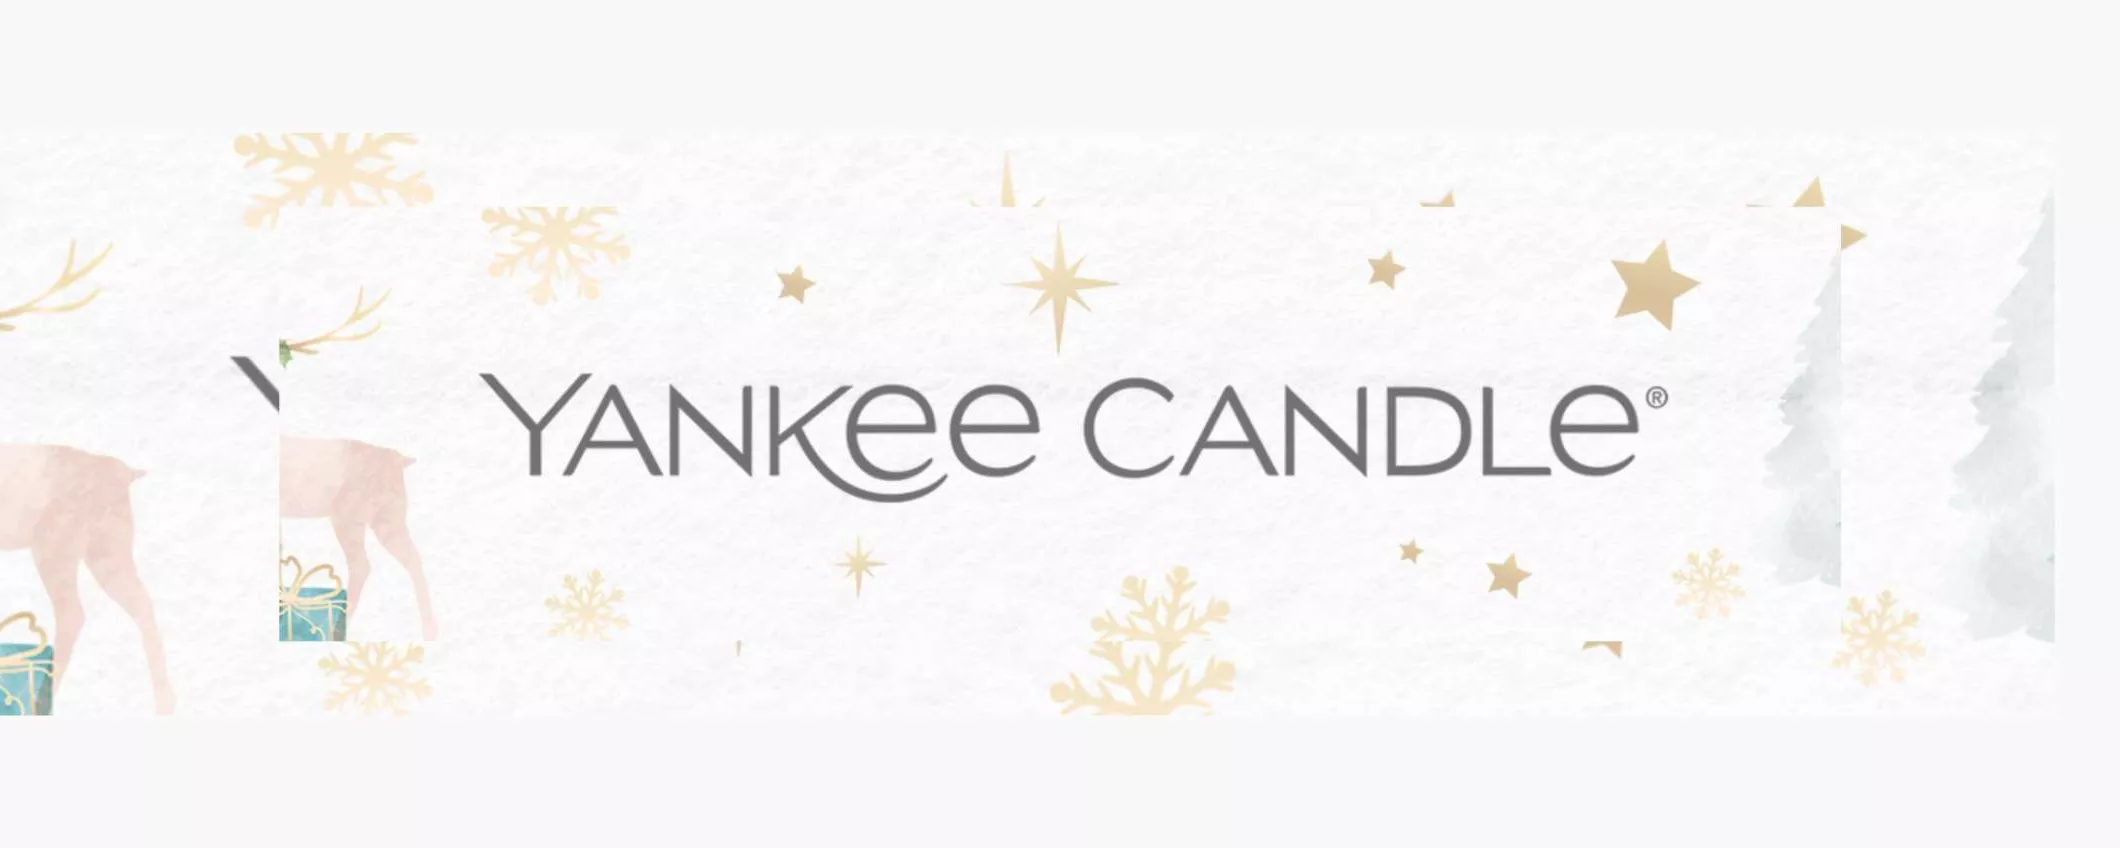 Yankee Candle profuma TUTTA la casa: le migliori candele in PROMO